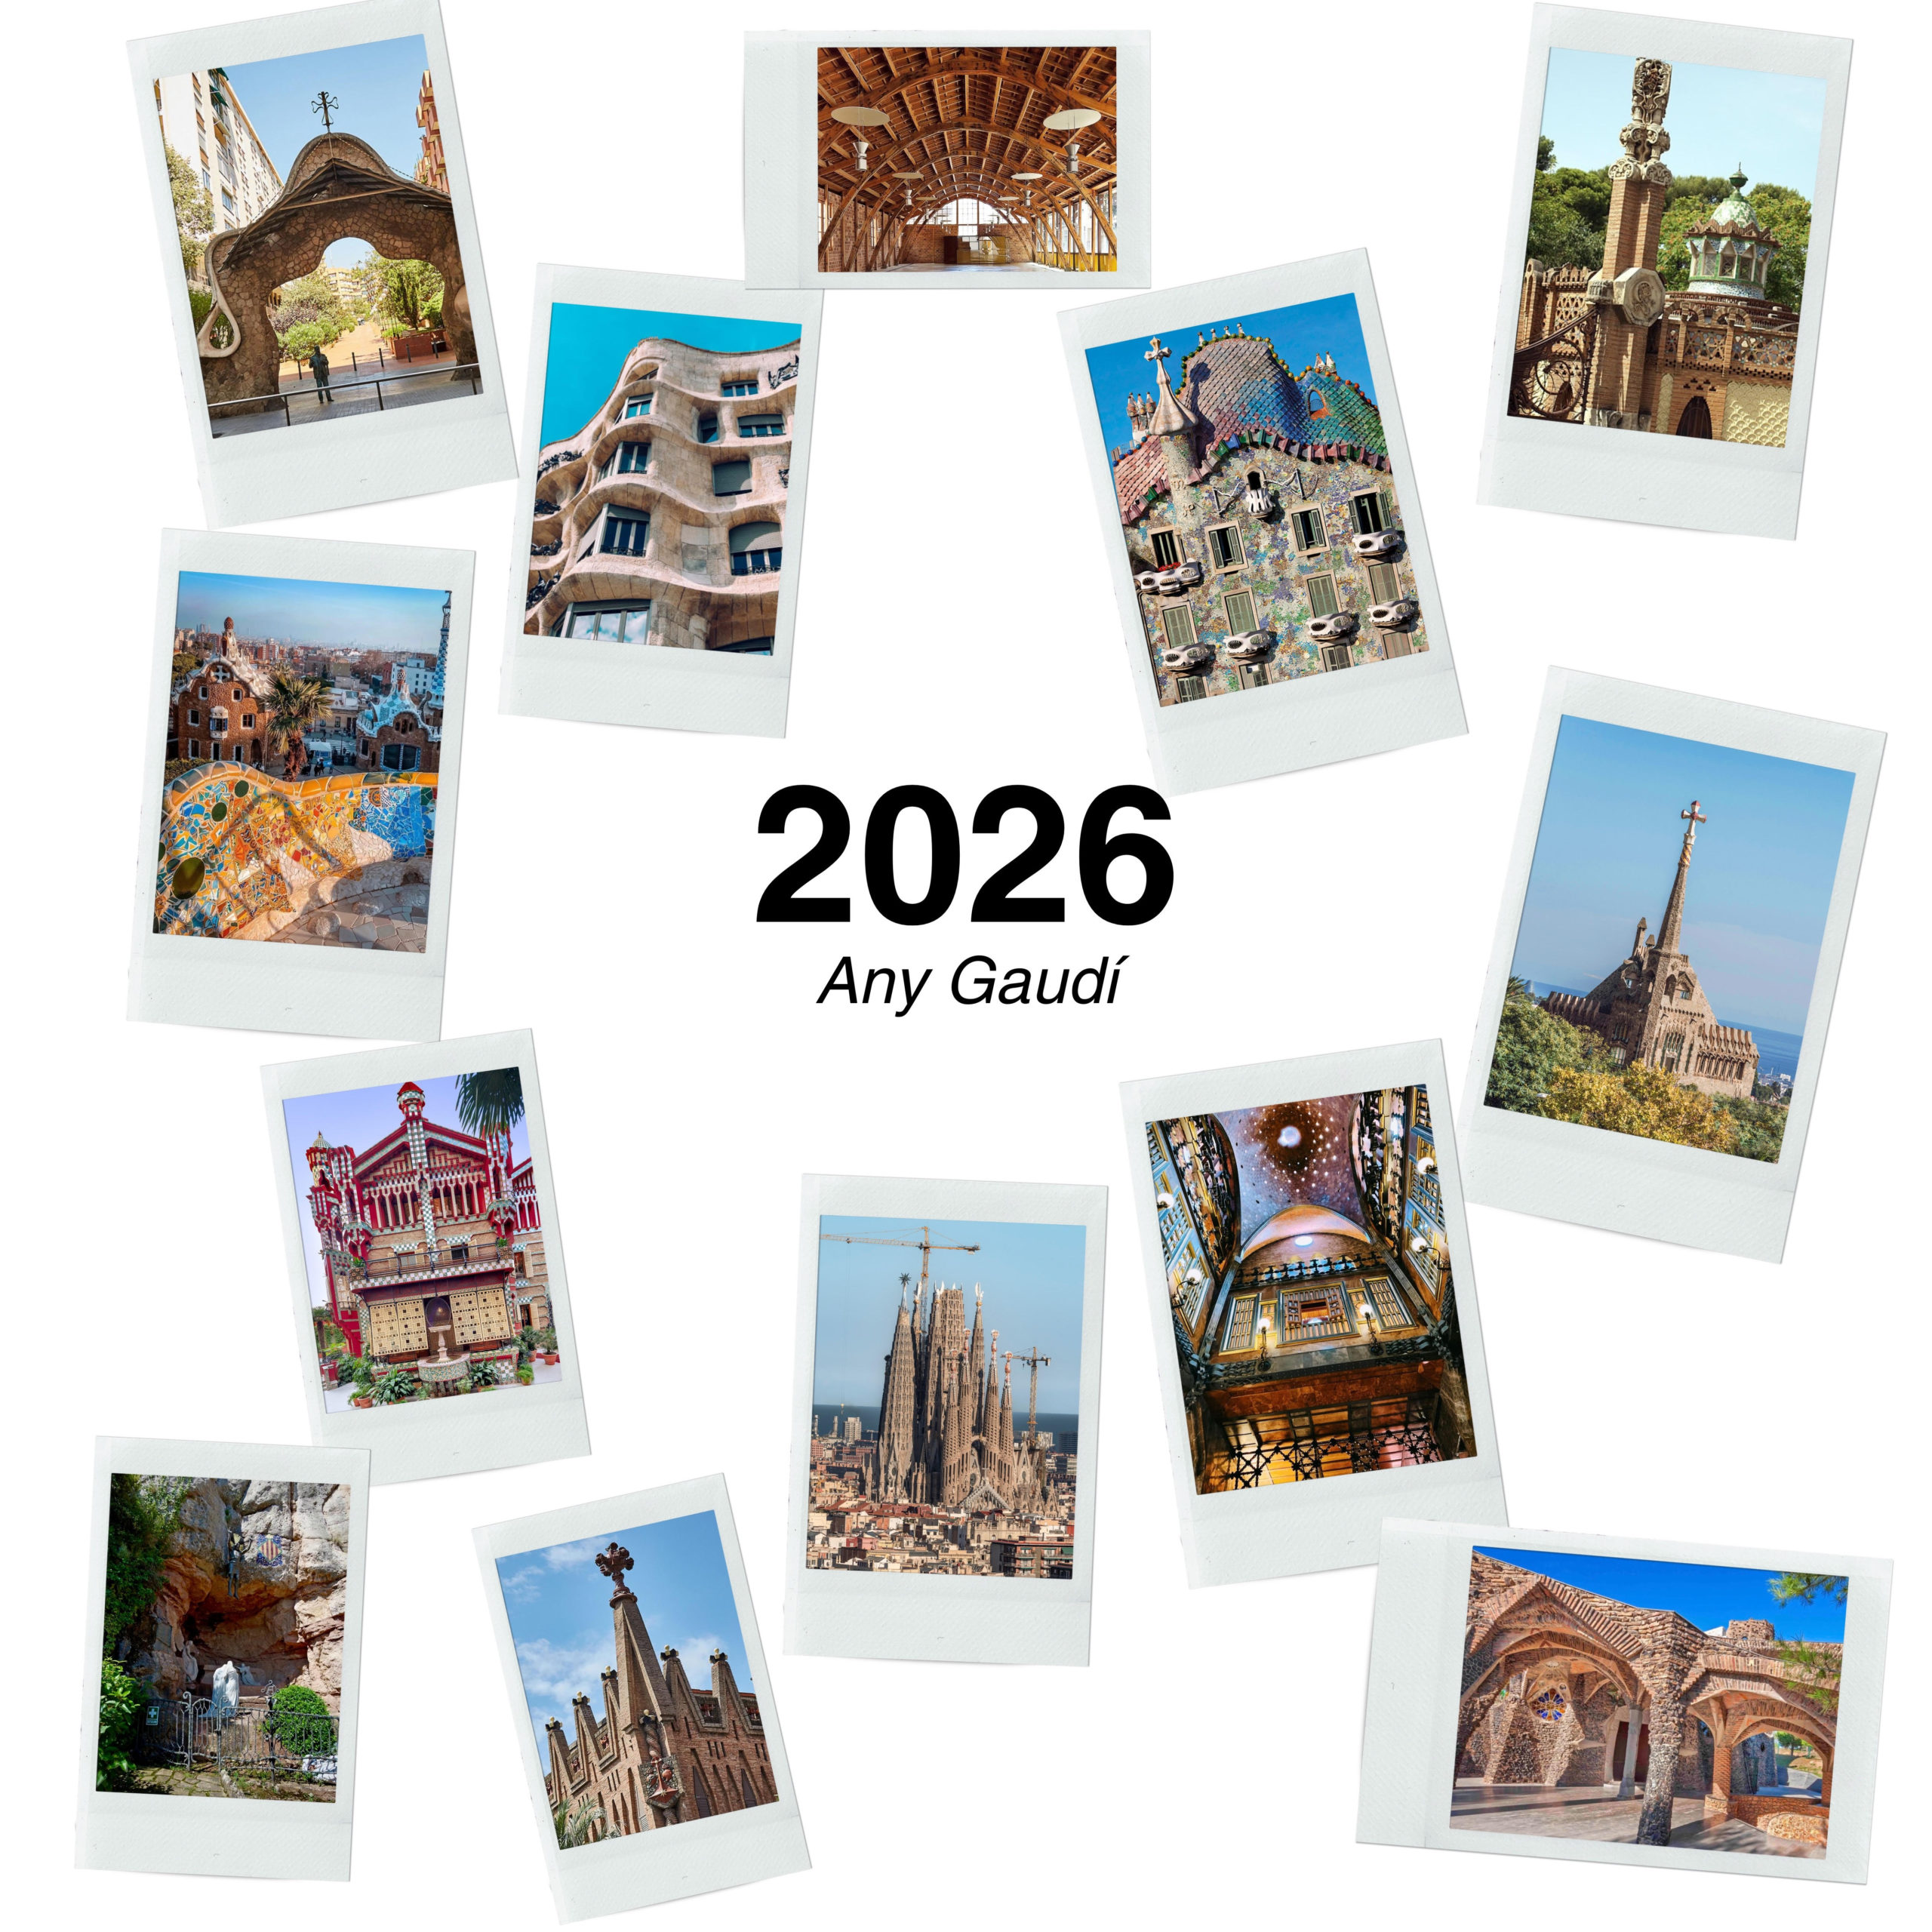 El año 2026 se conmemorará la figura de Antoni Gaudí i Cornet